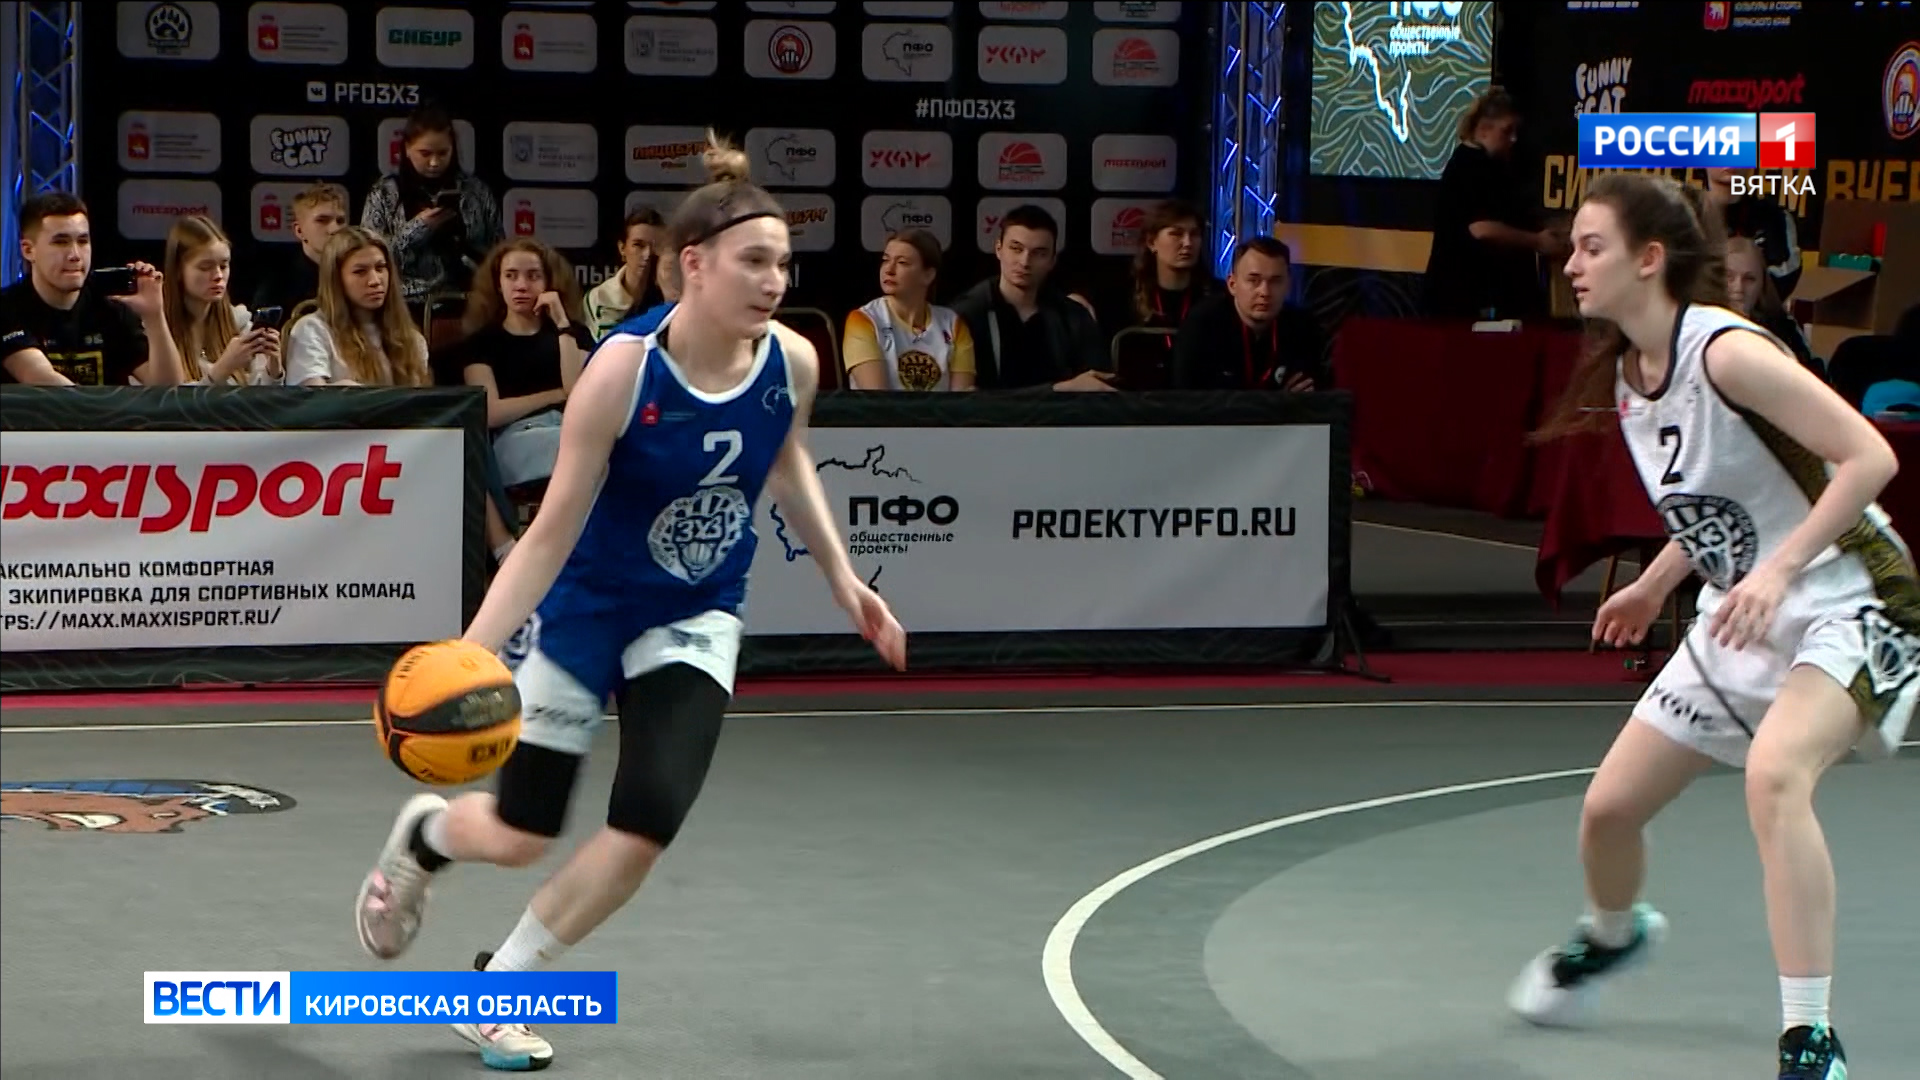 Кировчане приняли участие в суперфинале турнира ПФО по баскетболу 3x3